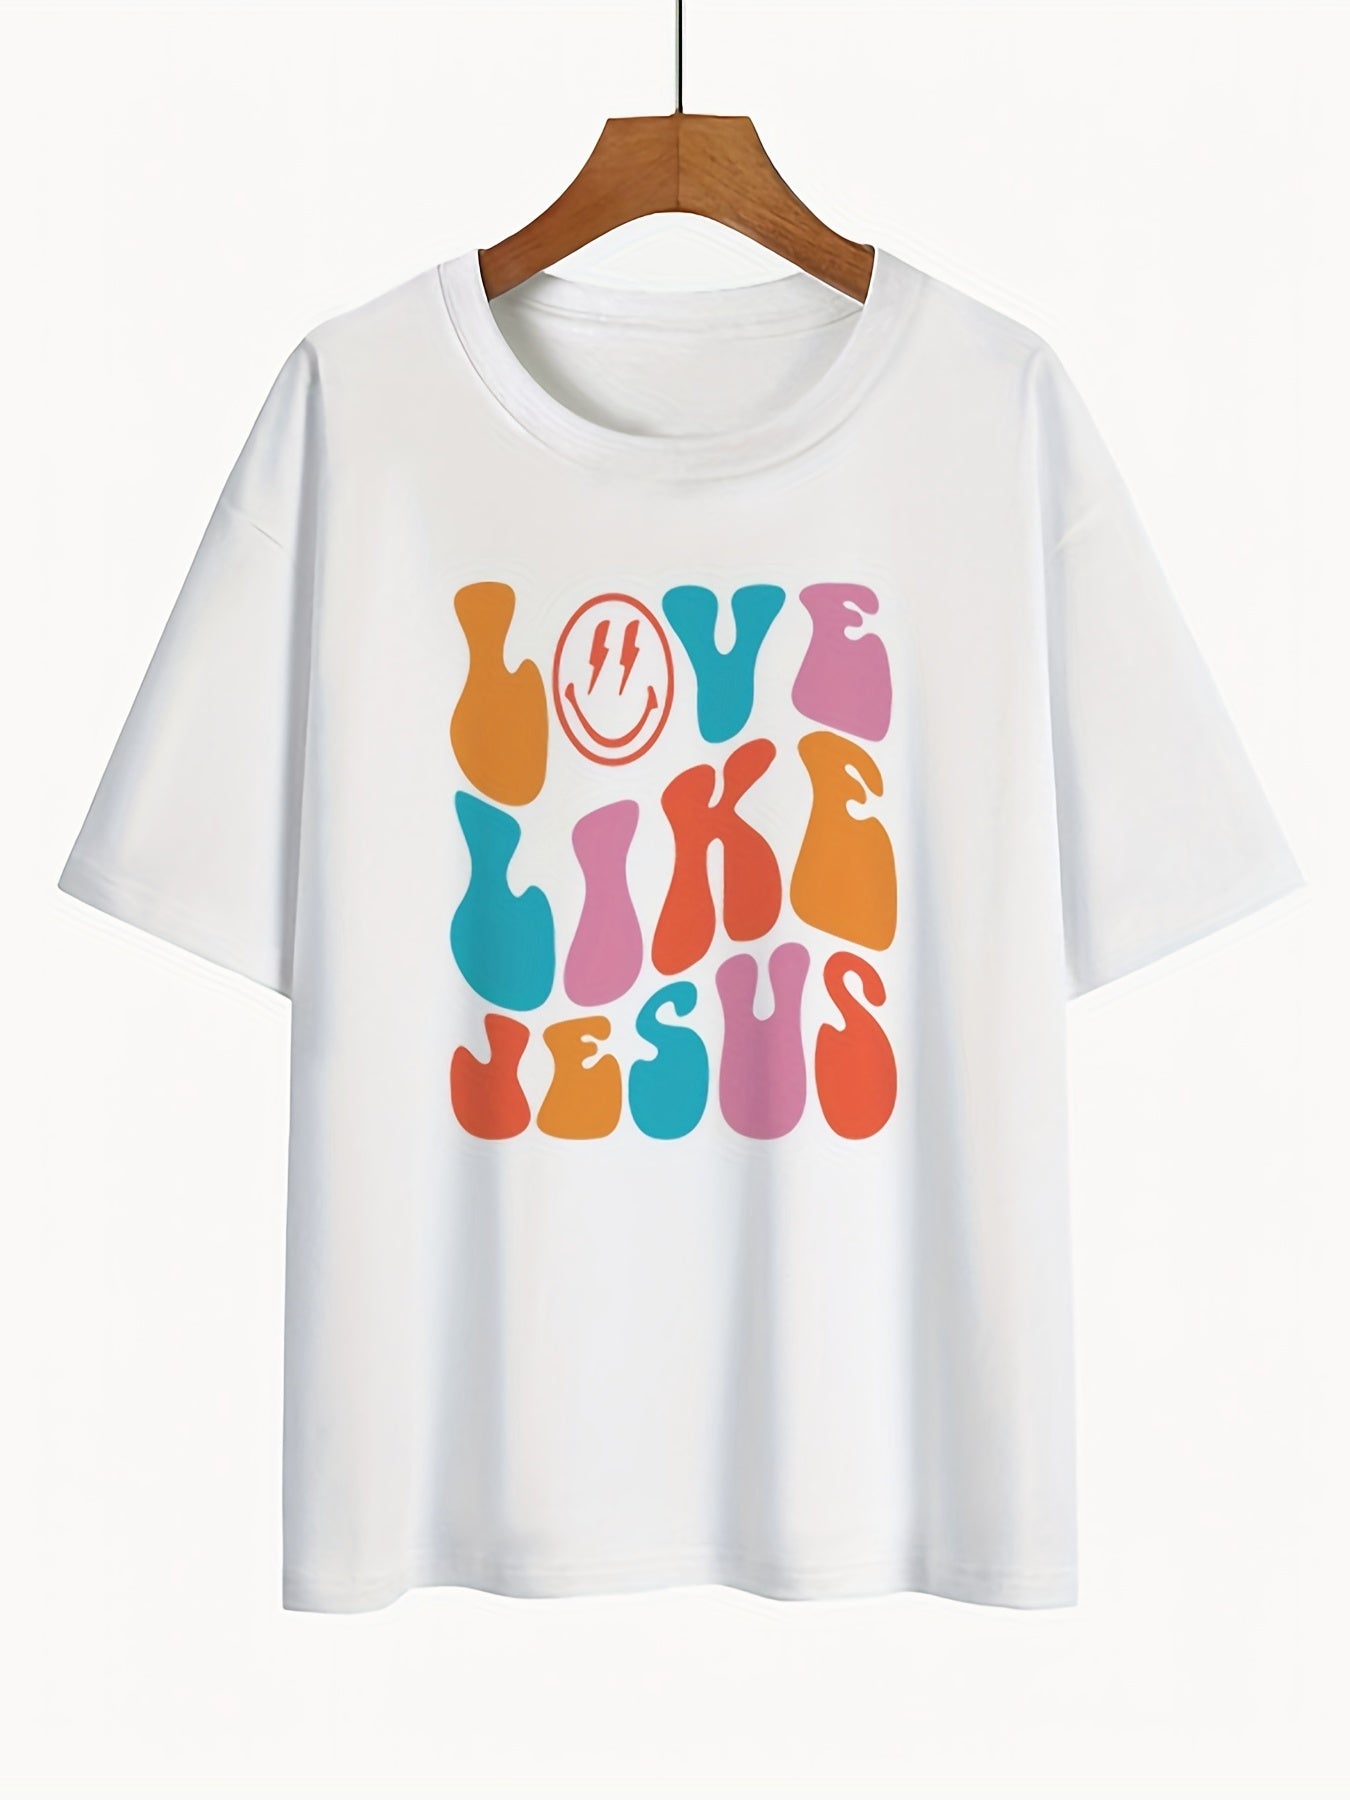 Love Like Jesus Women’s Christian T-shirt claimedbygoddesigns